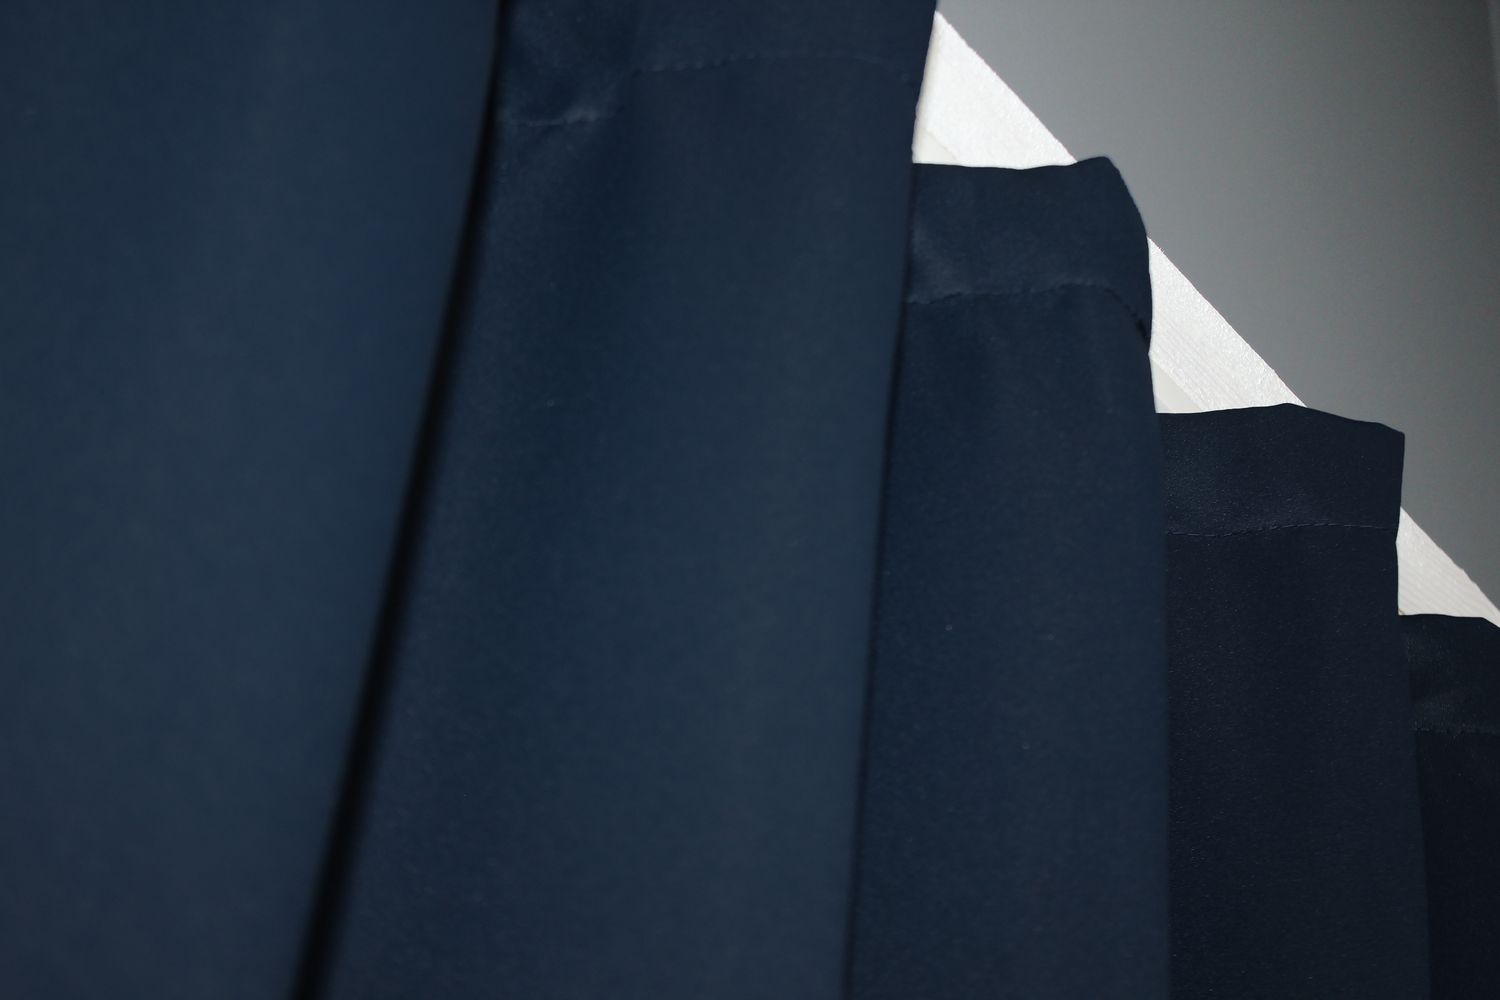 Комплект штор із тканини блекаут, колекція "Midnight" колір темно-синій 1164ш, Темно-синій, Комплект коротких штор (2шт. 1,4х1,7м.), Класичні, Короткі, 1,4 м., 1,7, 140, 170, 1,5 - 2,5 м., В комплекті 2 шт., Тасьма